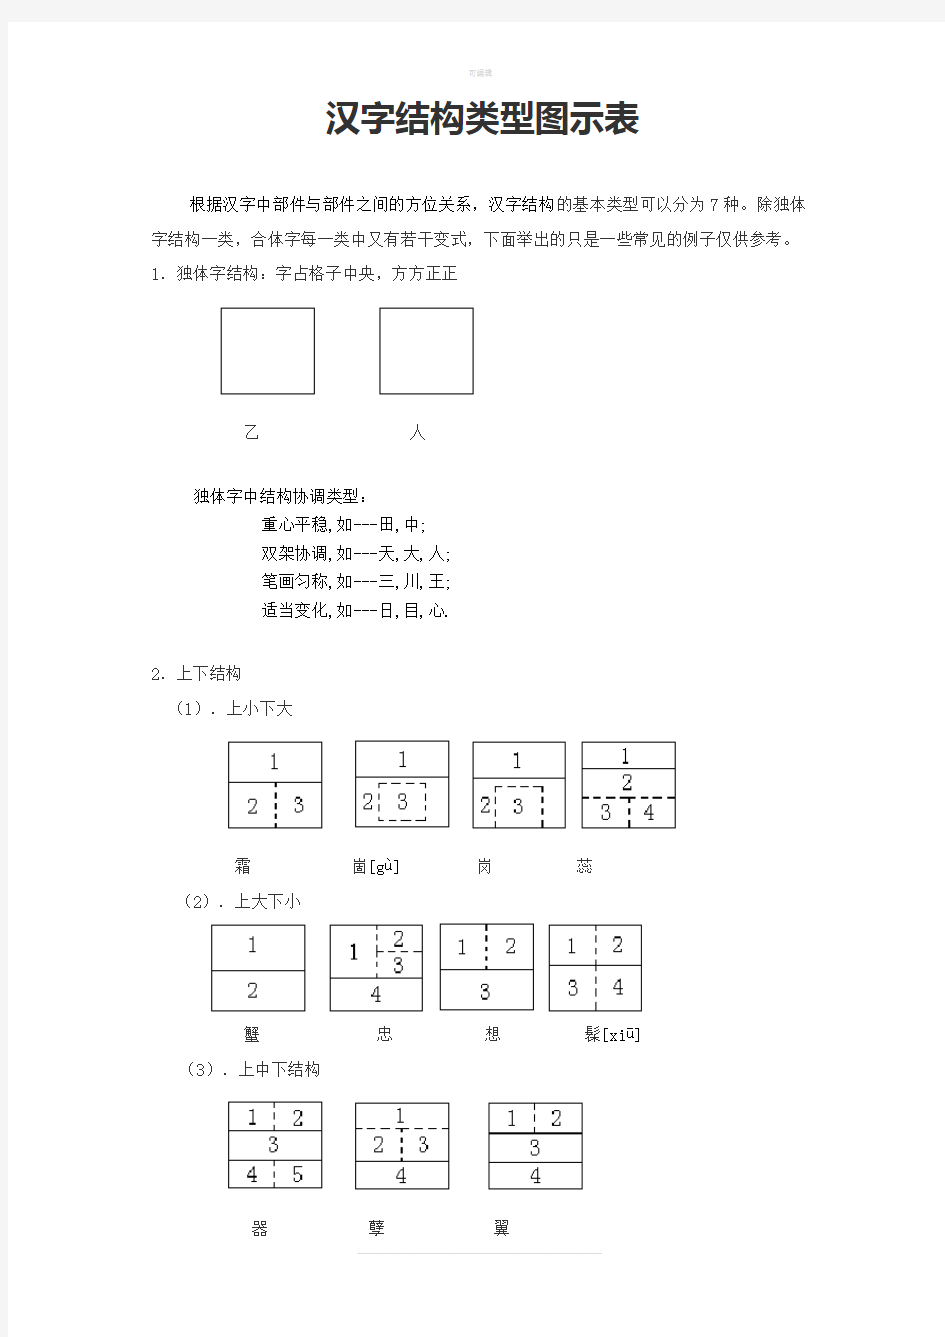 汉字结构类型图示表